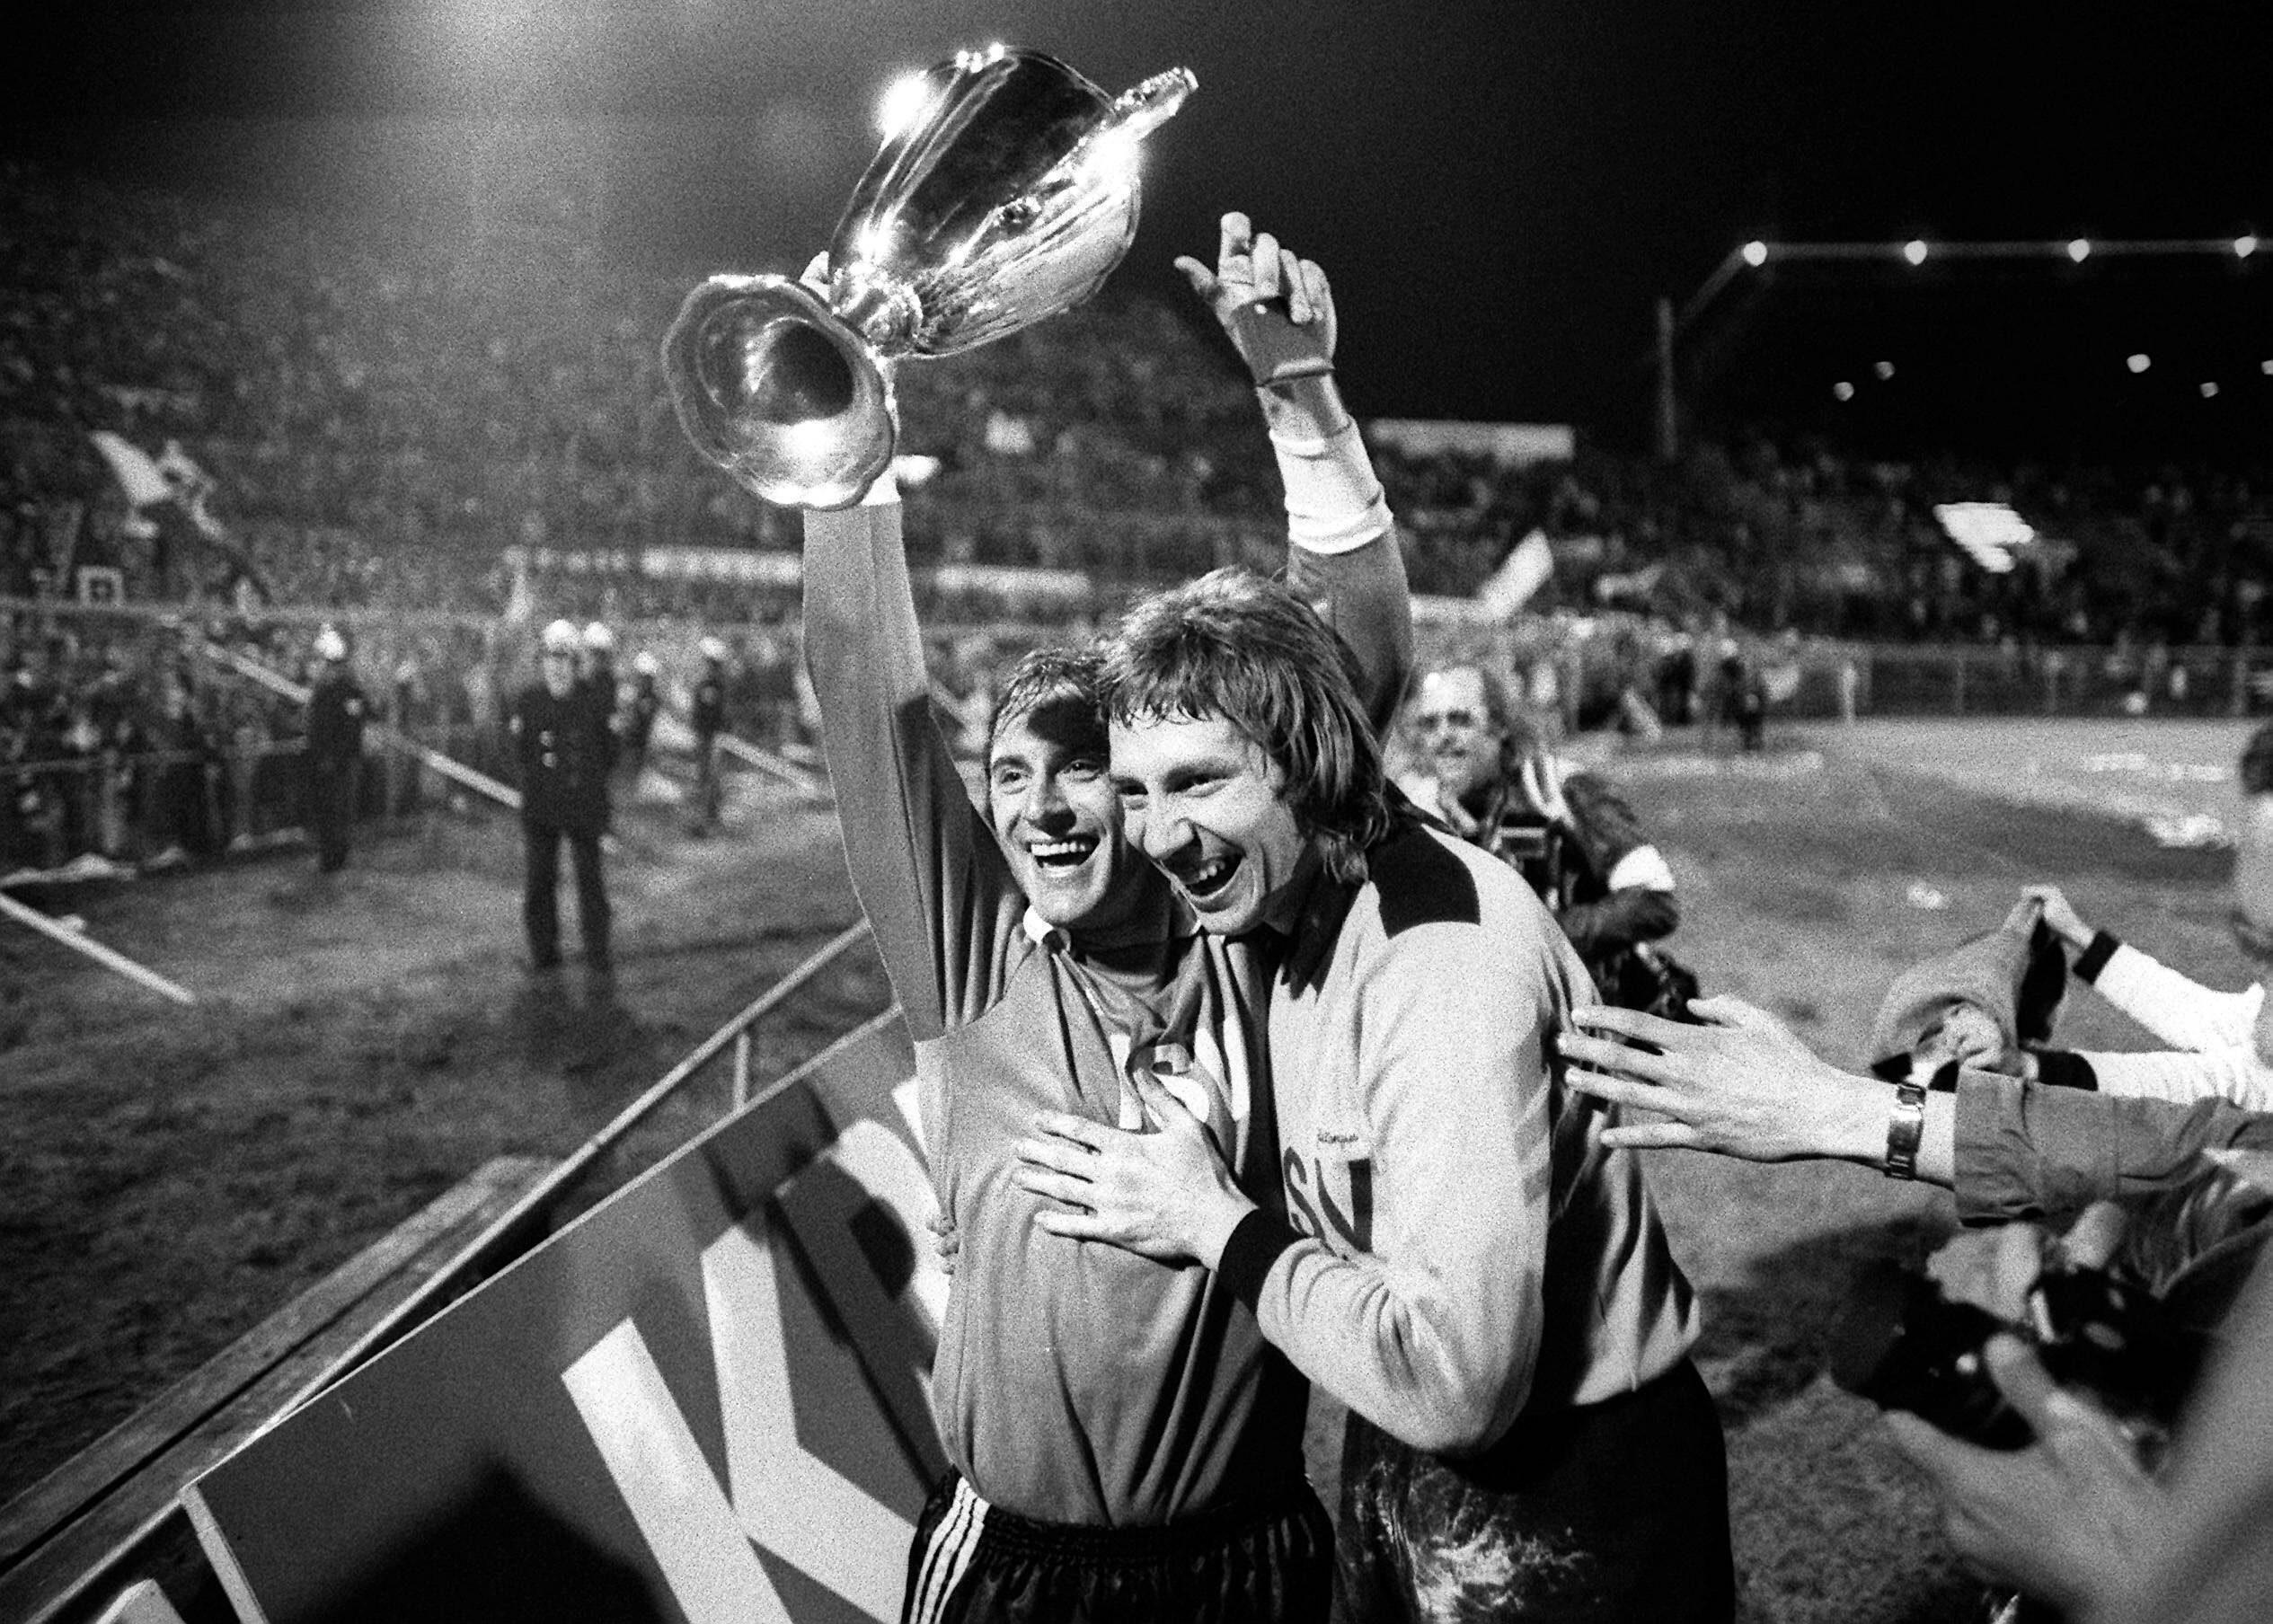 Lange her: Rudi Kargus (r.) gewann mit dem HSV 1977 den Europapokal der Pokalsieger.